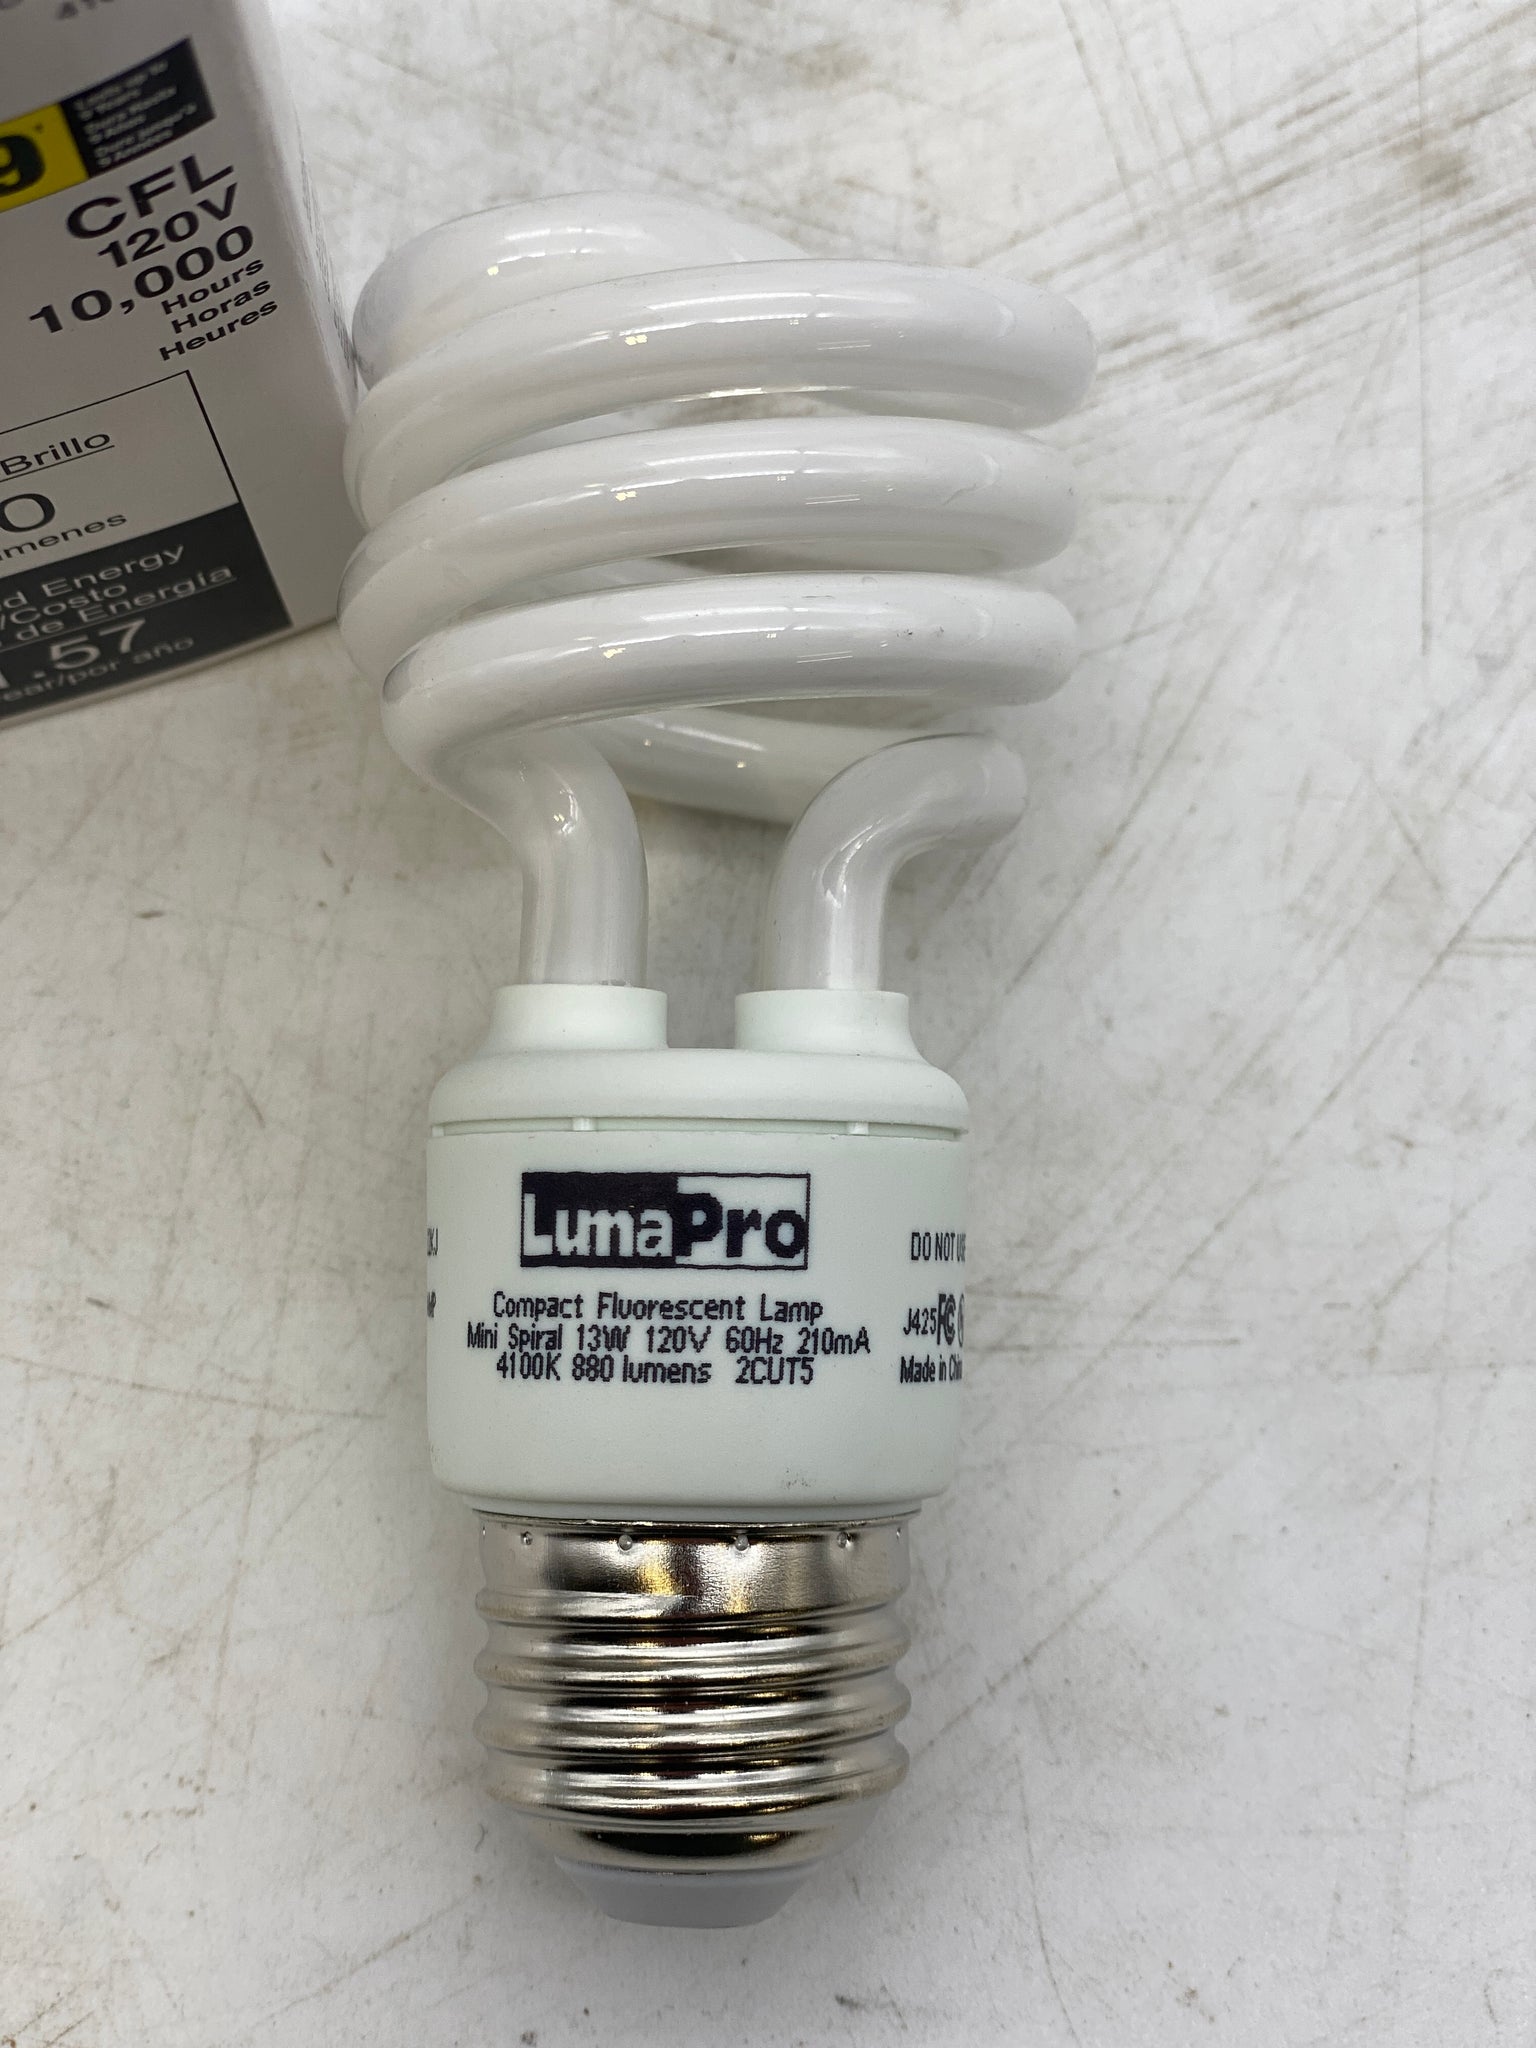 Lumapro LUMAPRO 15W, T7 Incandescent Light Bulb 15T7C/120V